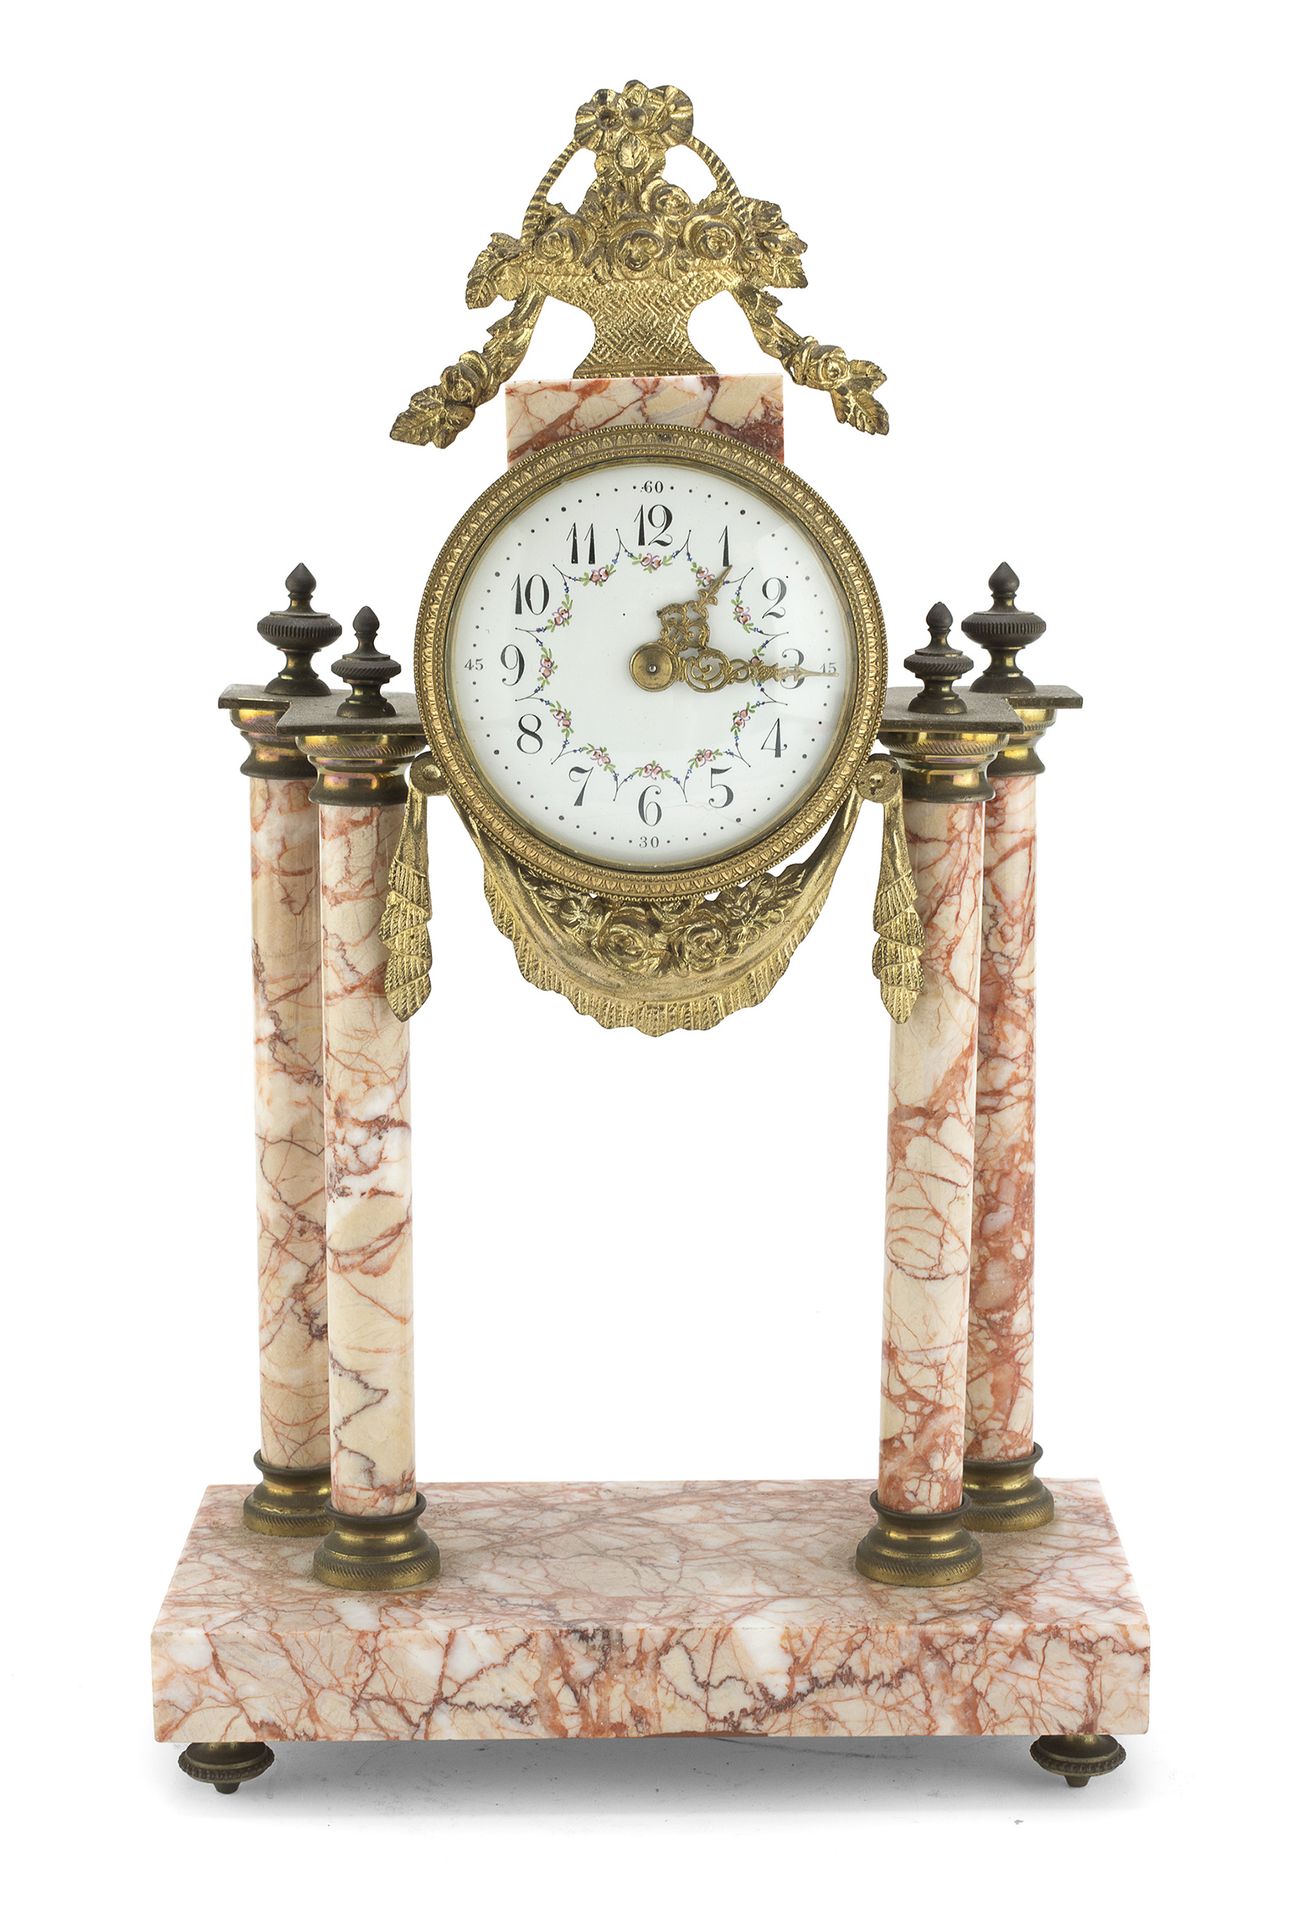 Null 粉红色维罗纳大理石台钟，19世纪末

路易十六风格，寺庙形状，白色珐琅表盘。鎏金金属配件和门楣。

尺寸为38 x 22 x 10厘米。